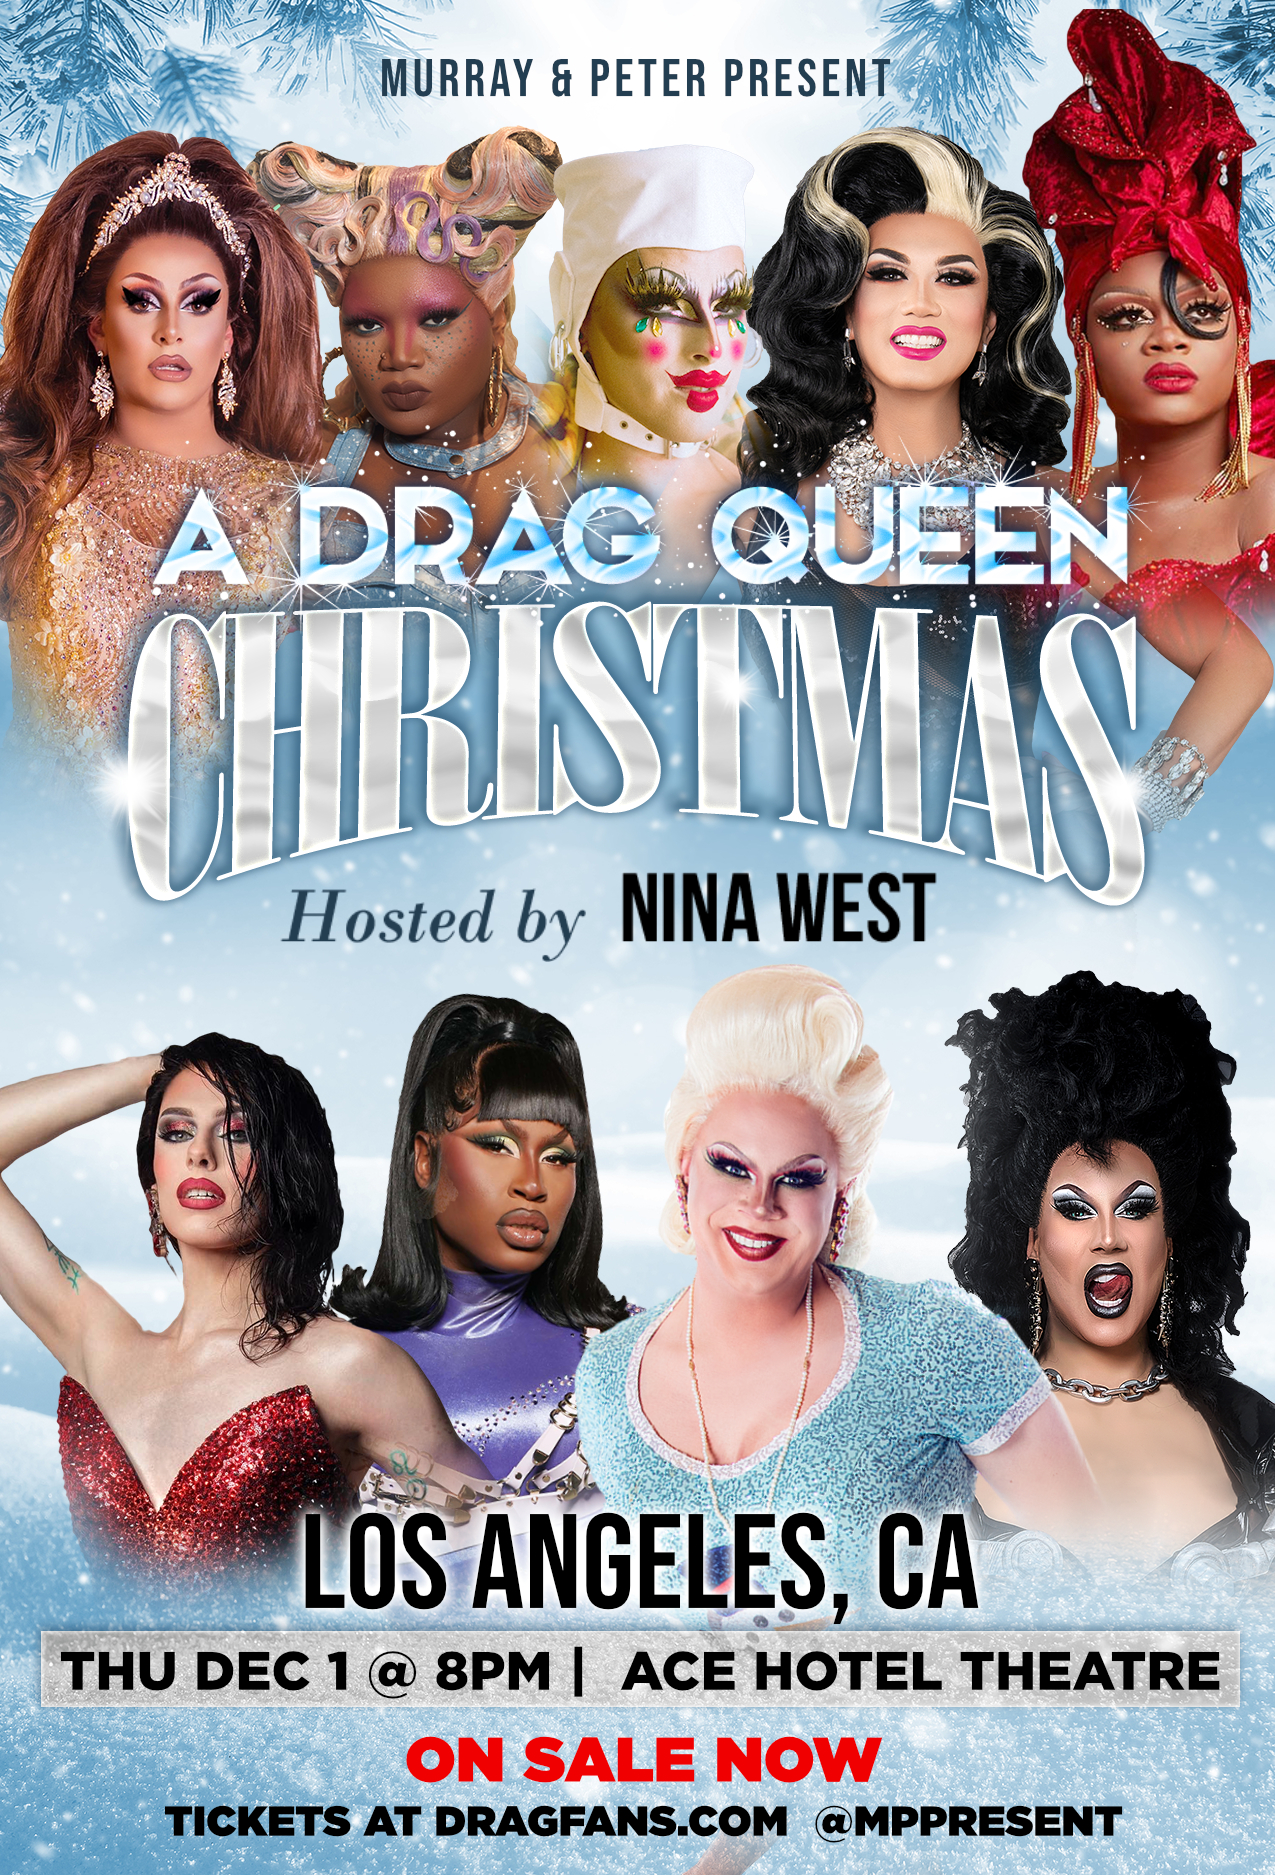 A Drag Queen Christmas promo - December 1